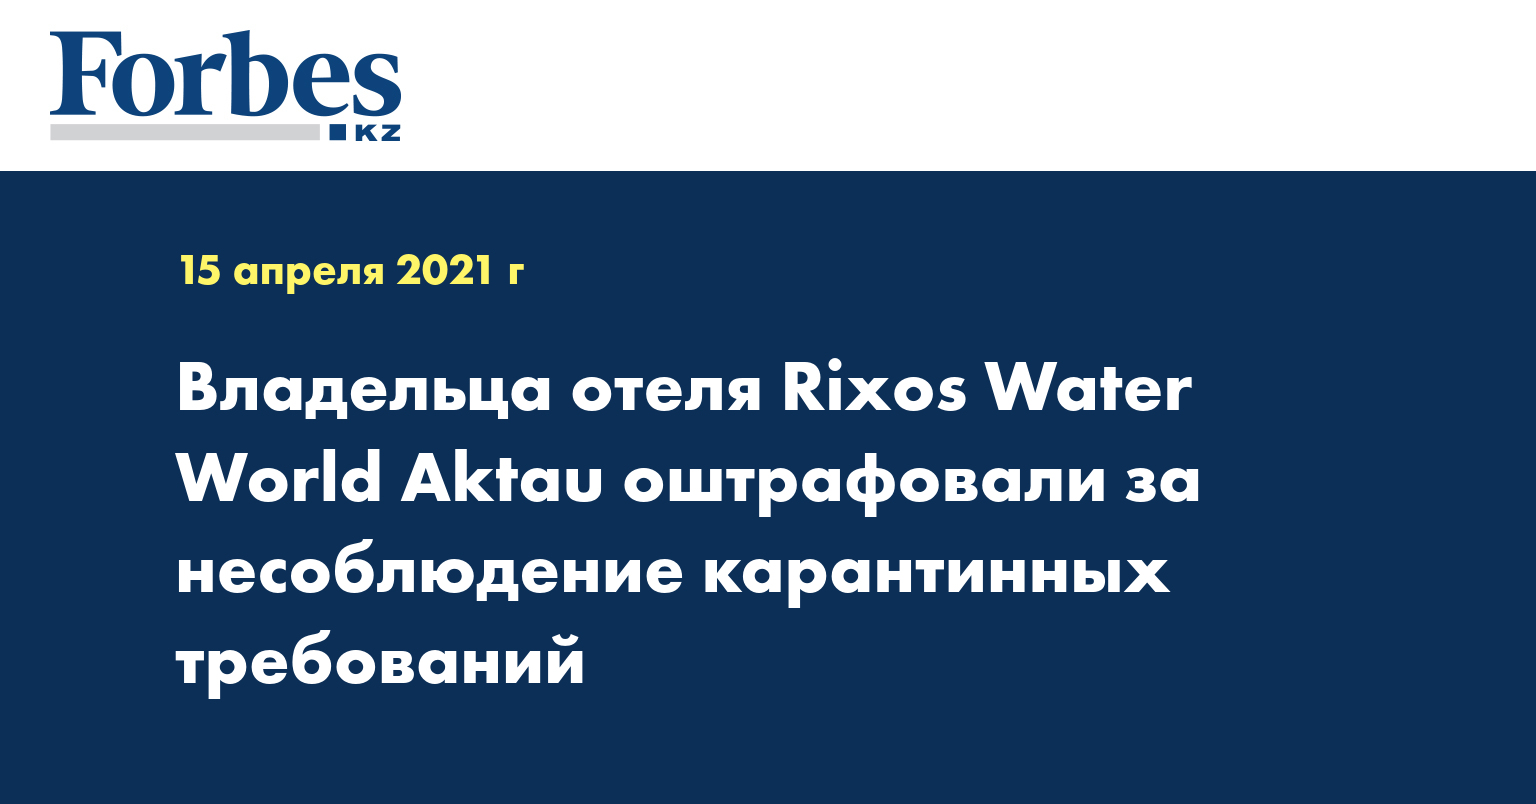  Владельца отеля Rixos Water World Aktau оштрафовали за несоблюдение карантинных требований